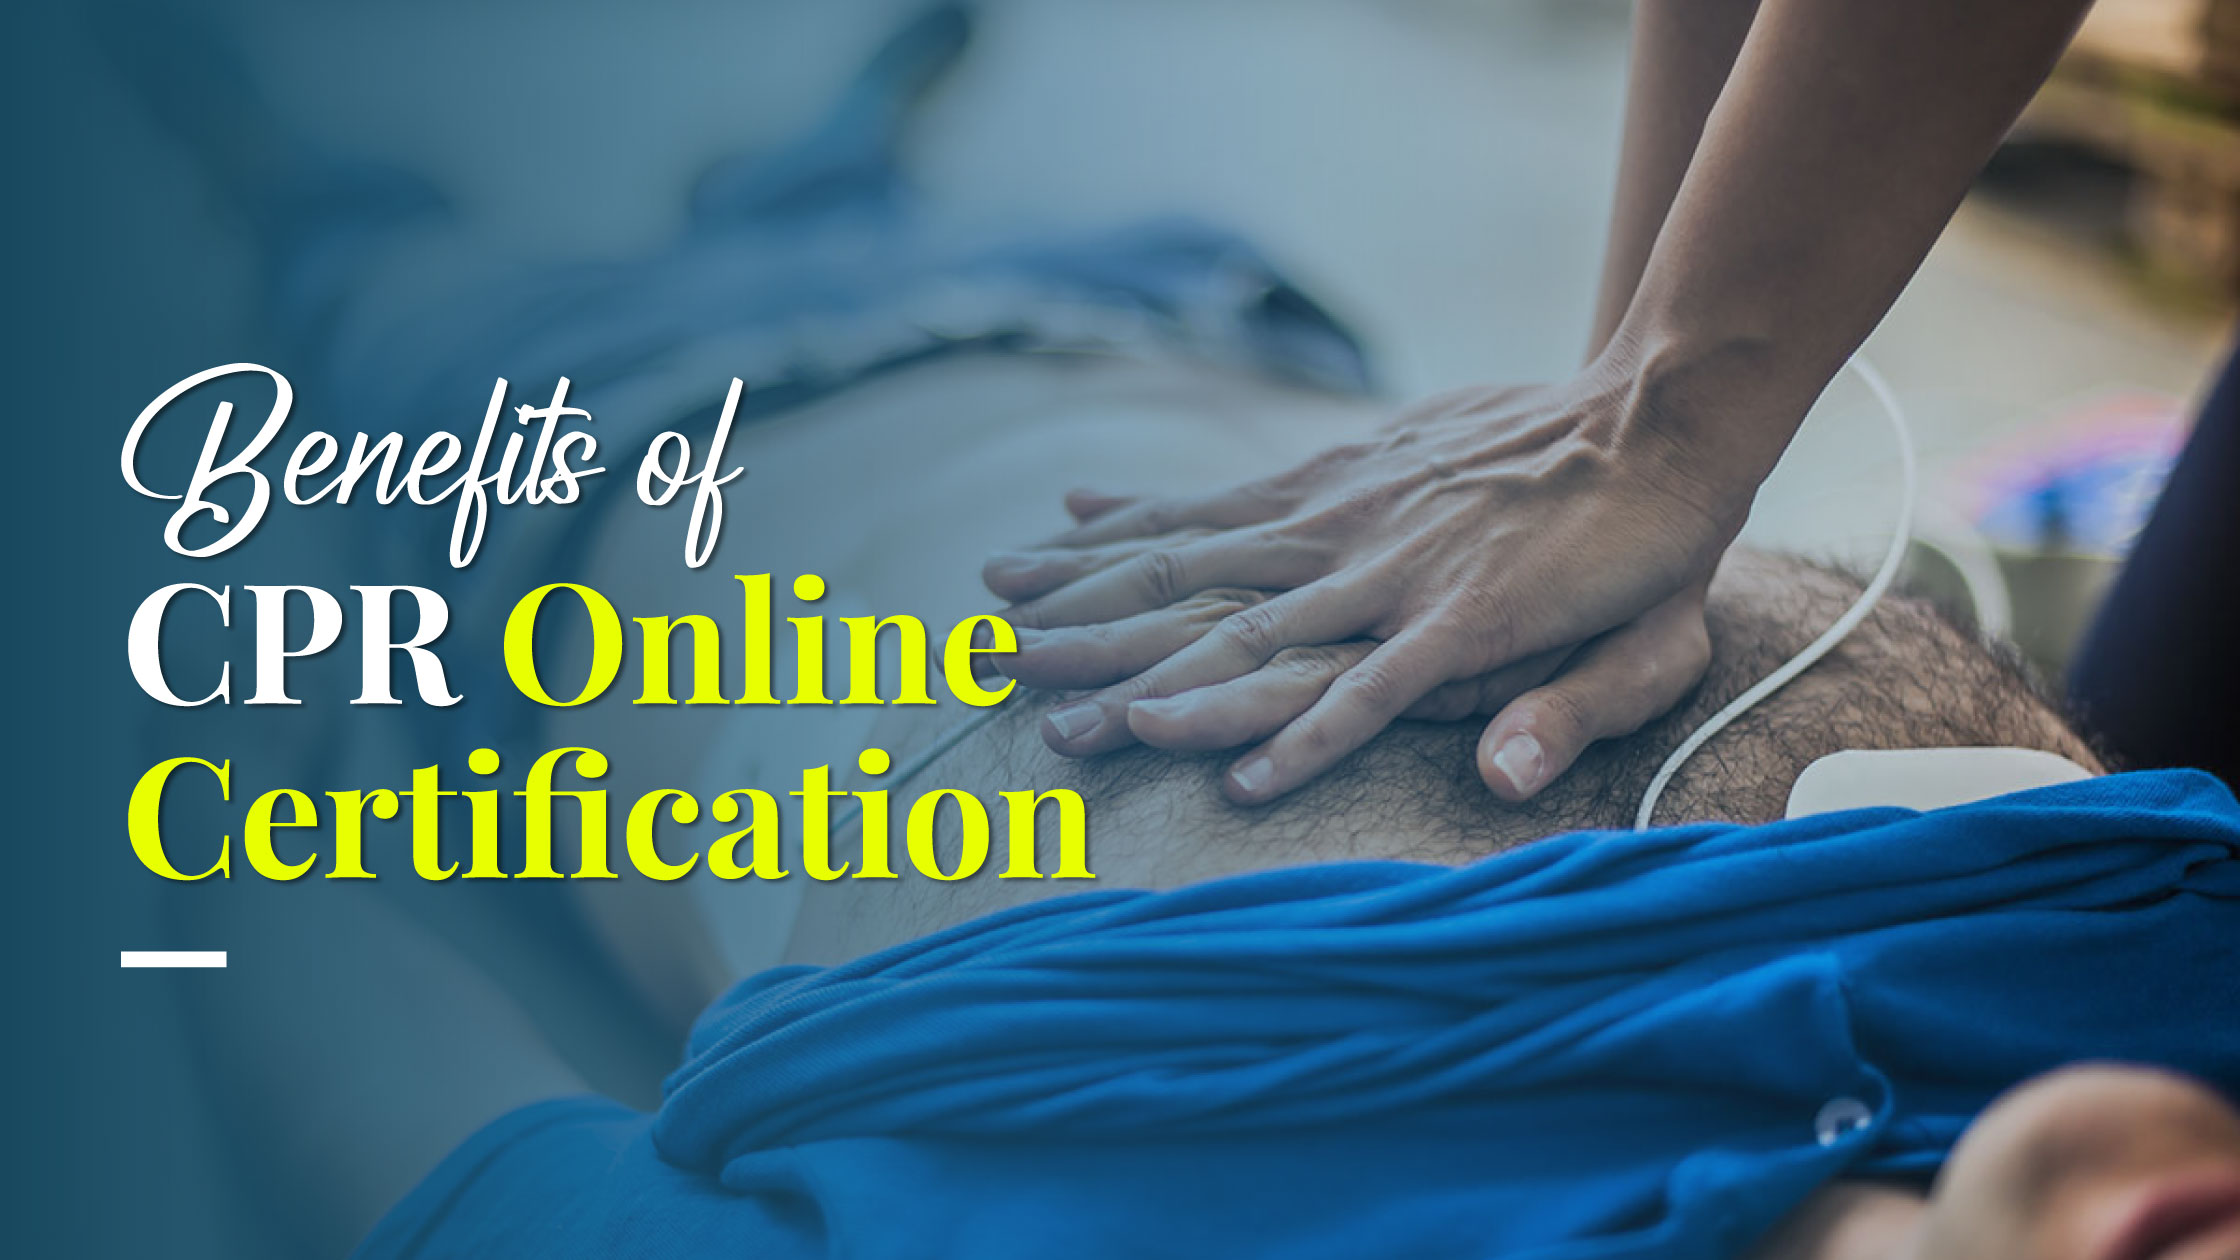 Top Benefits of CPR Online Certification